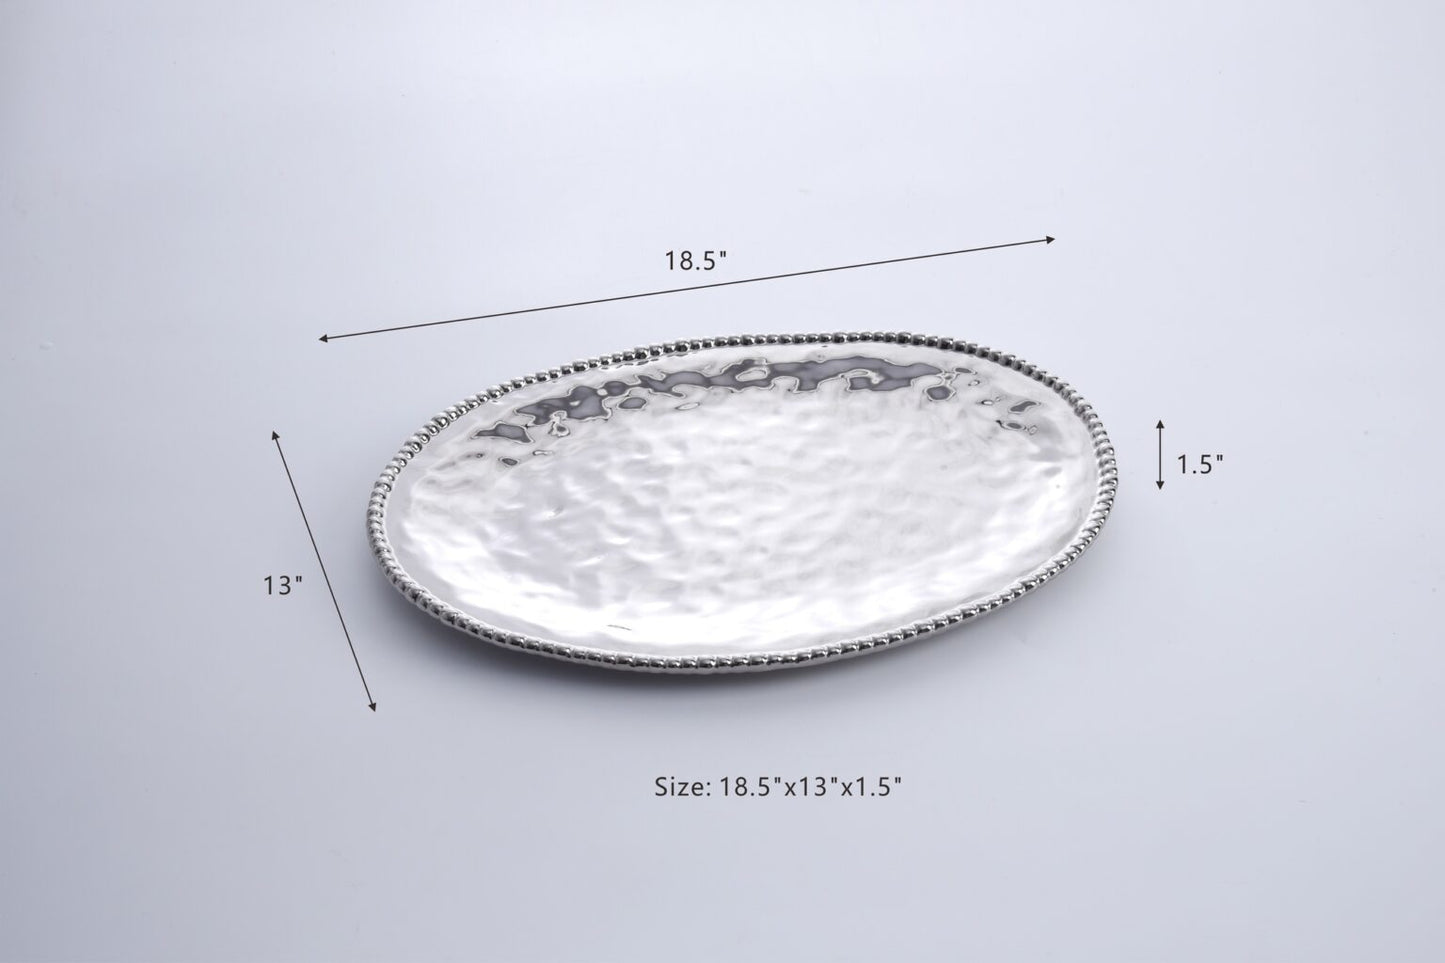 Large Oval Platter
SKU: CER1723